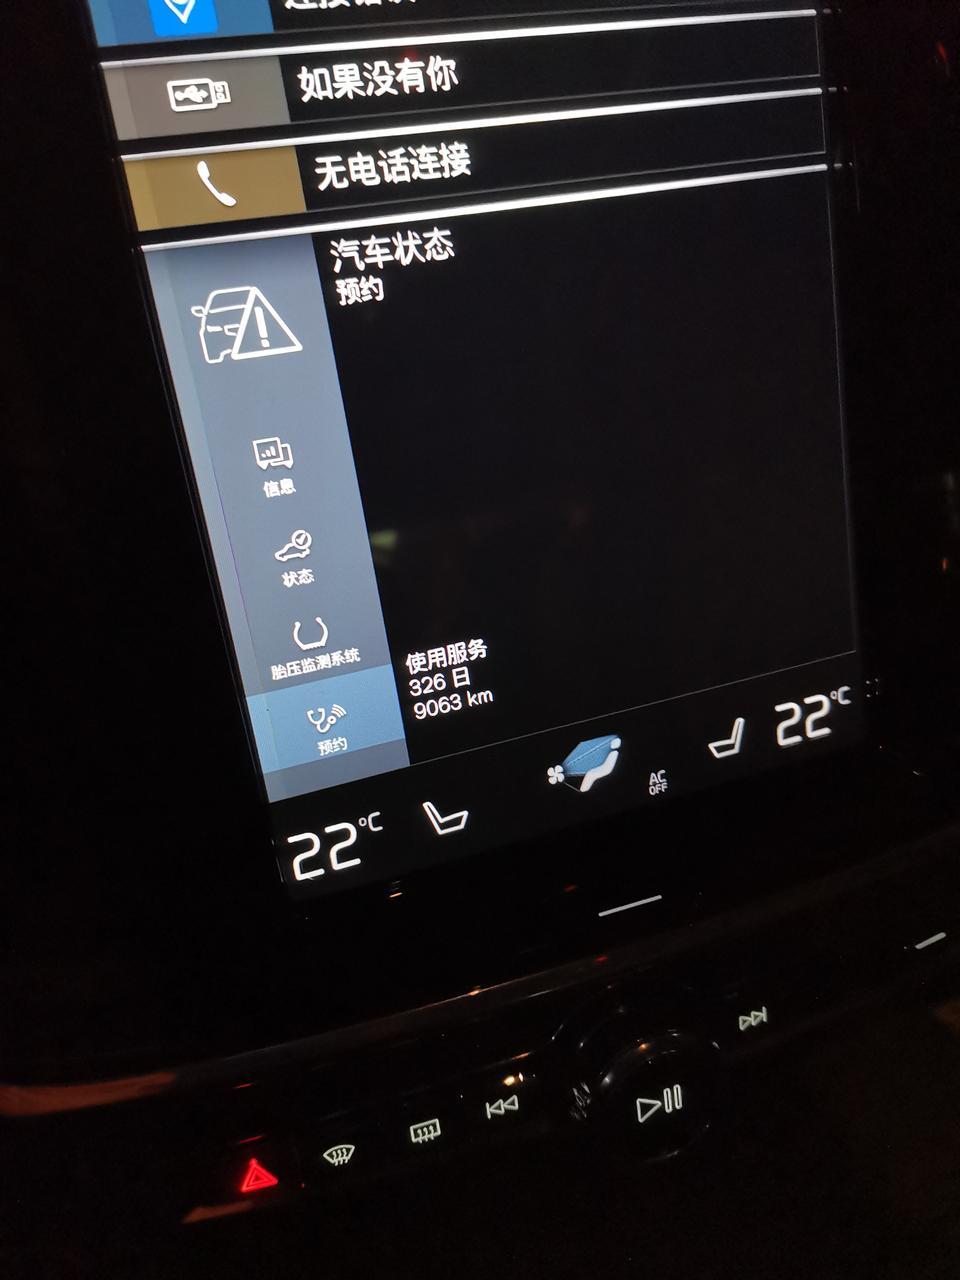 沃尔沃s90我刚提的新车不到一个月。预约这个怎么会显示使用服务326天？汽车铭牌上生产日期可是说九月份生产的新车？